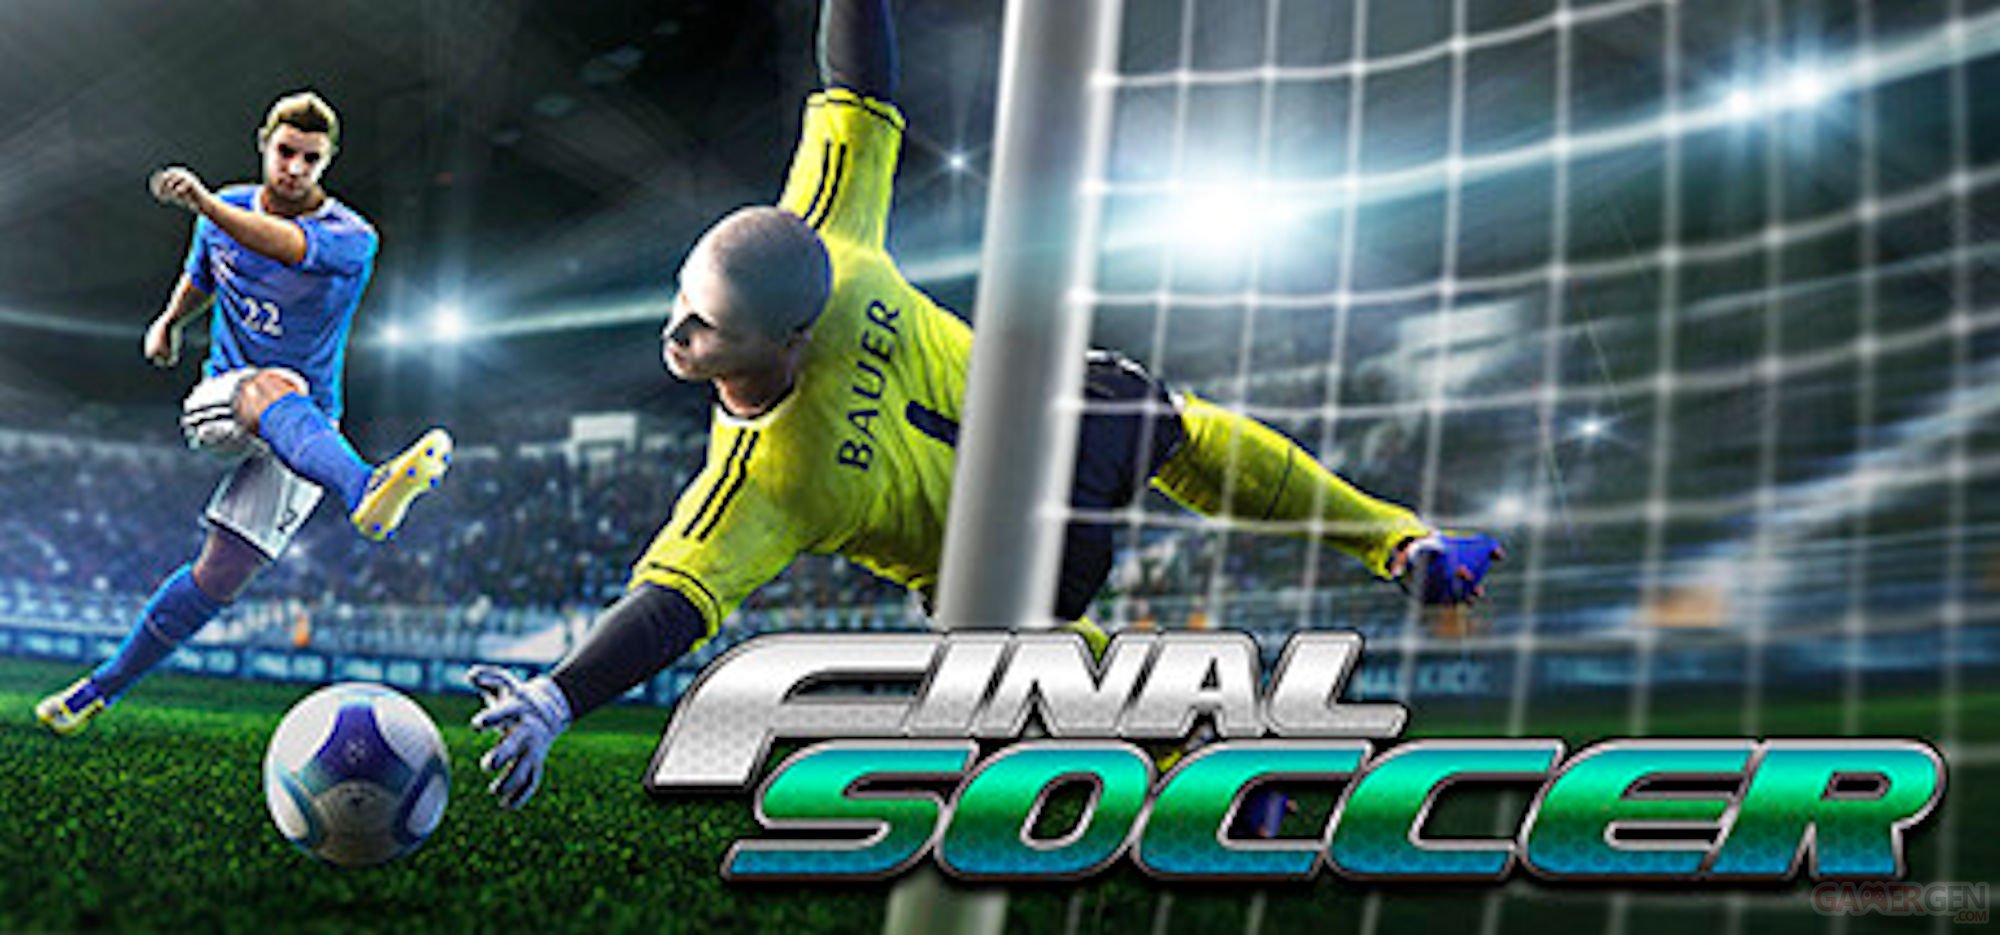 https://global-img.gamergen.com/final-soccer-image_0901004501.jpg